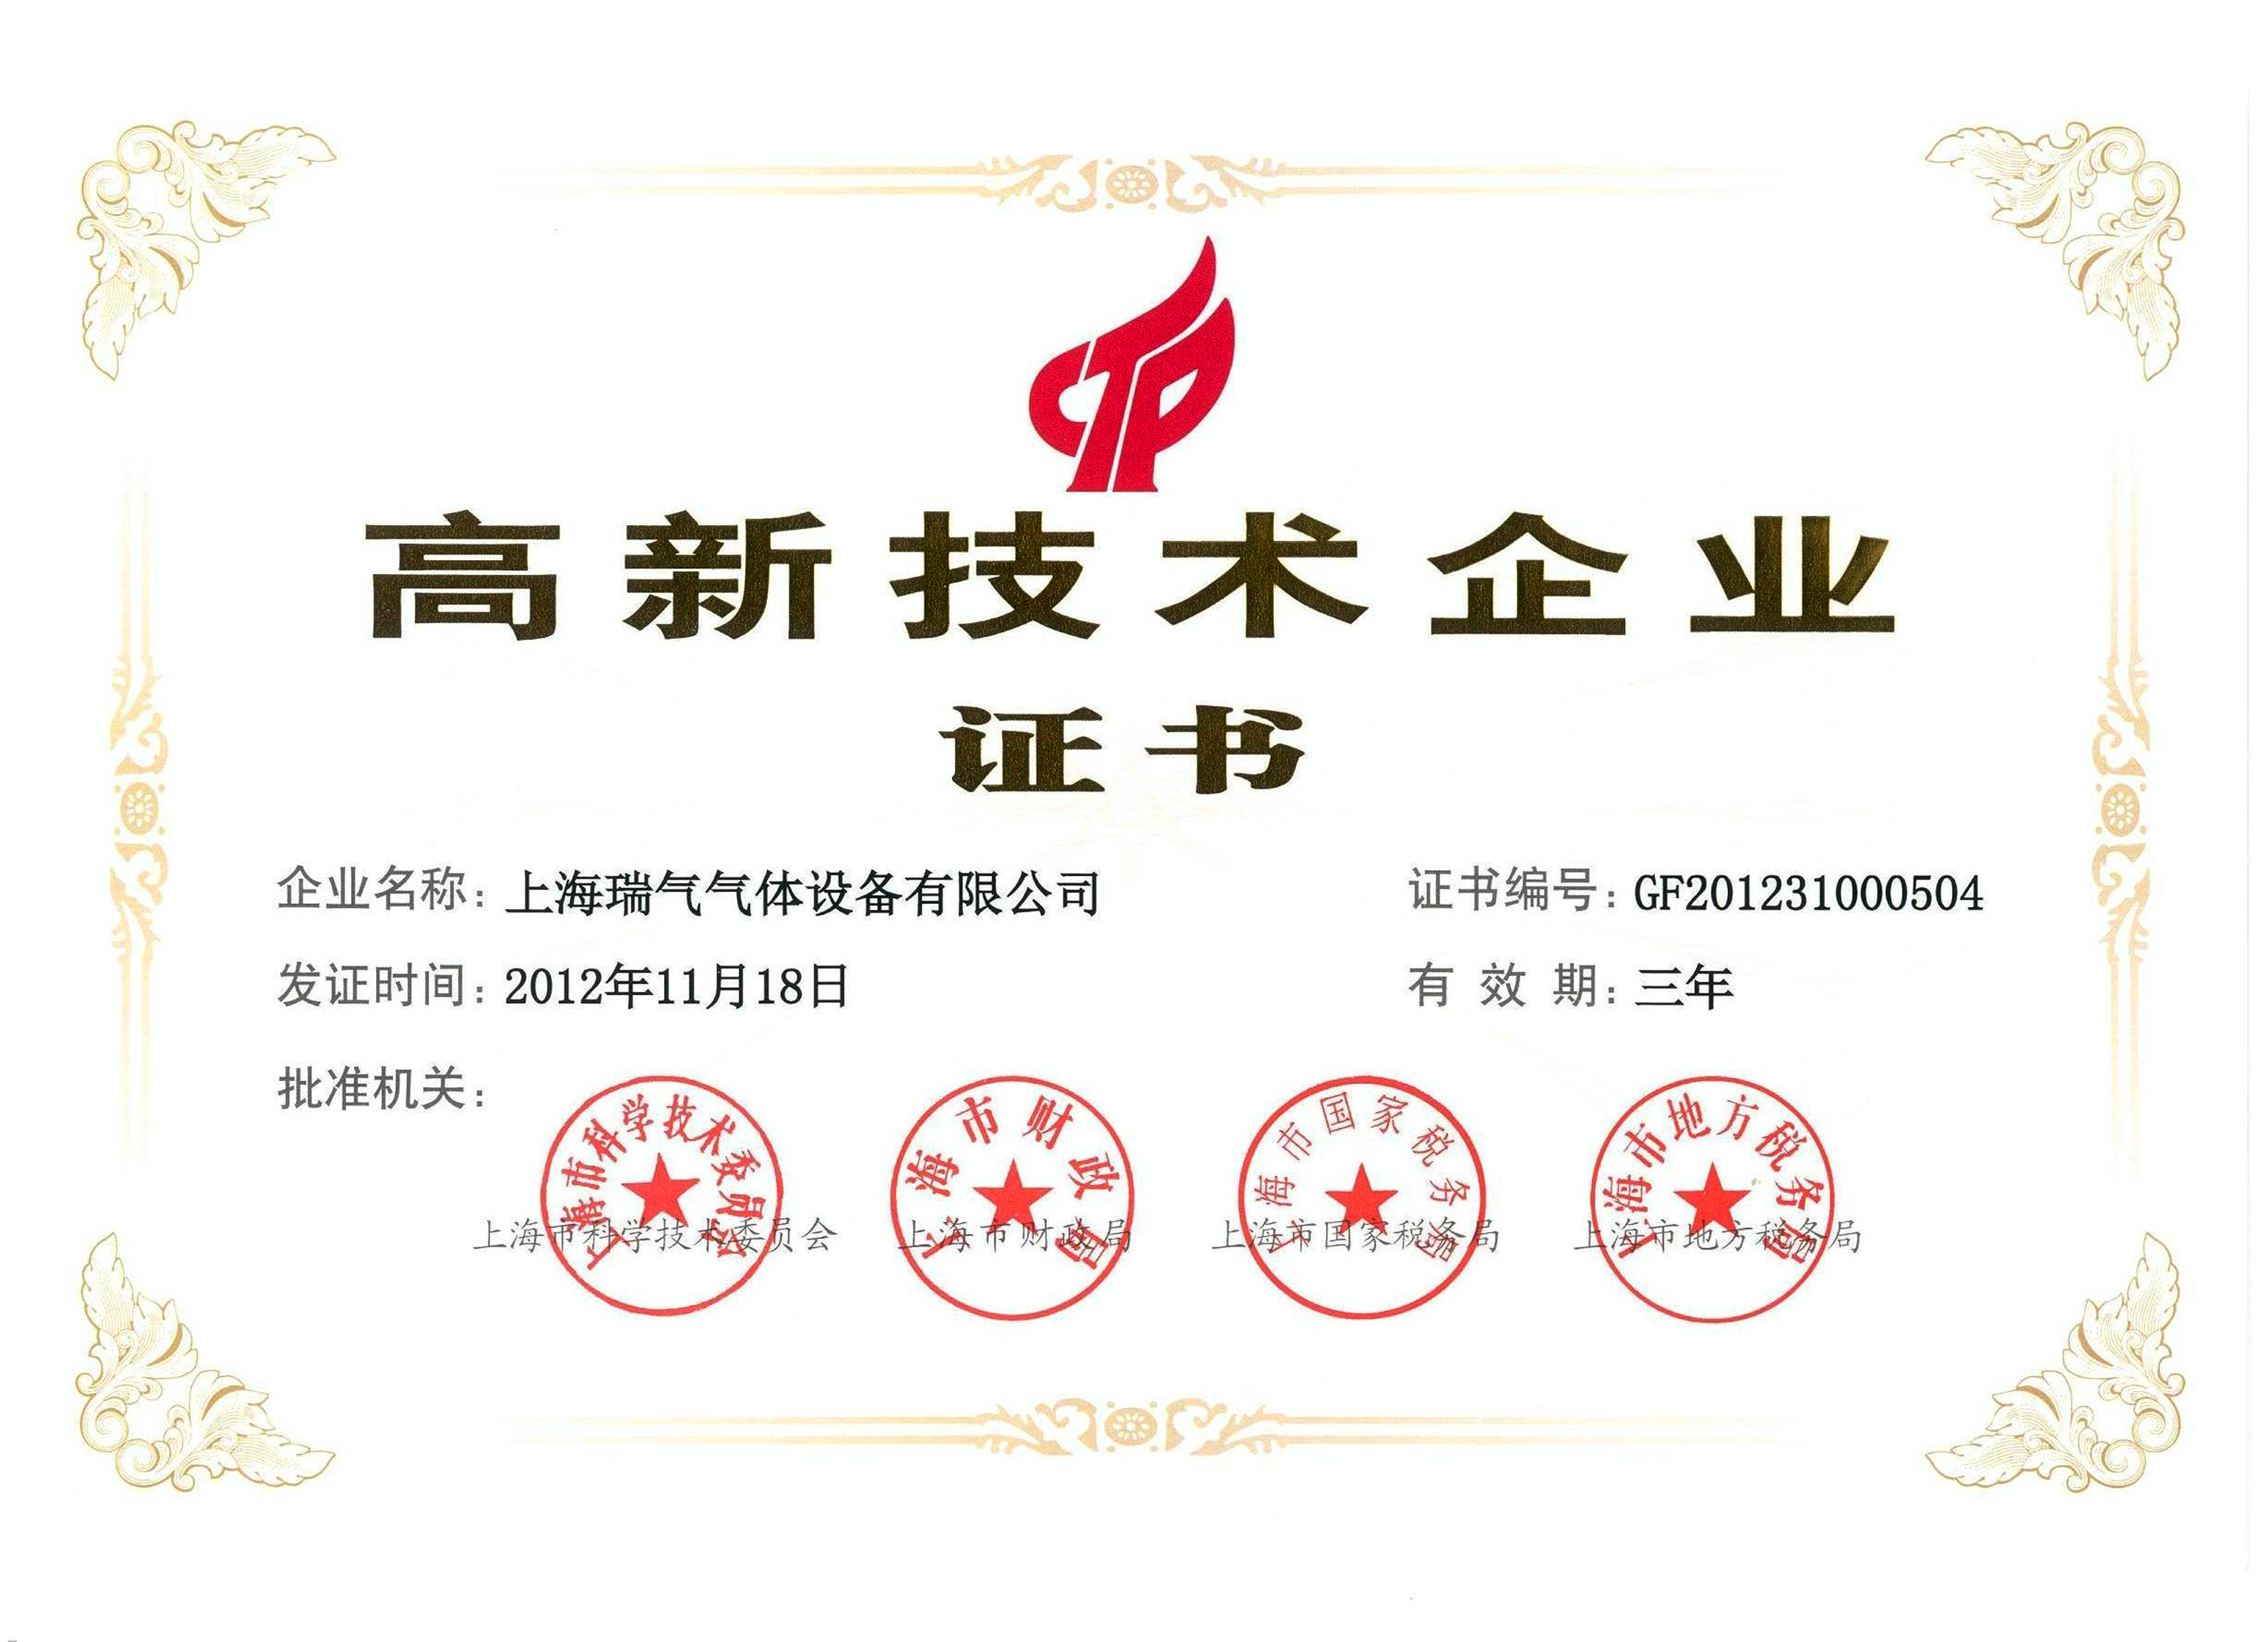 上海瑞气荣评“上海市高新技术企业”